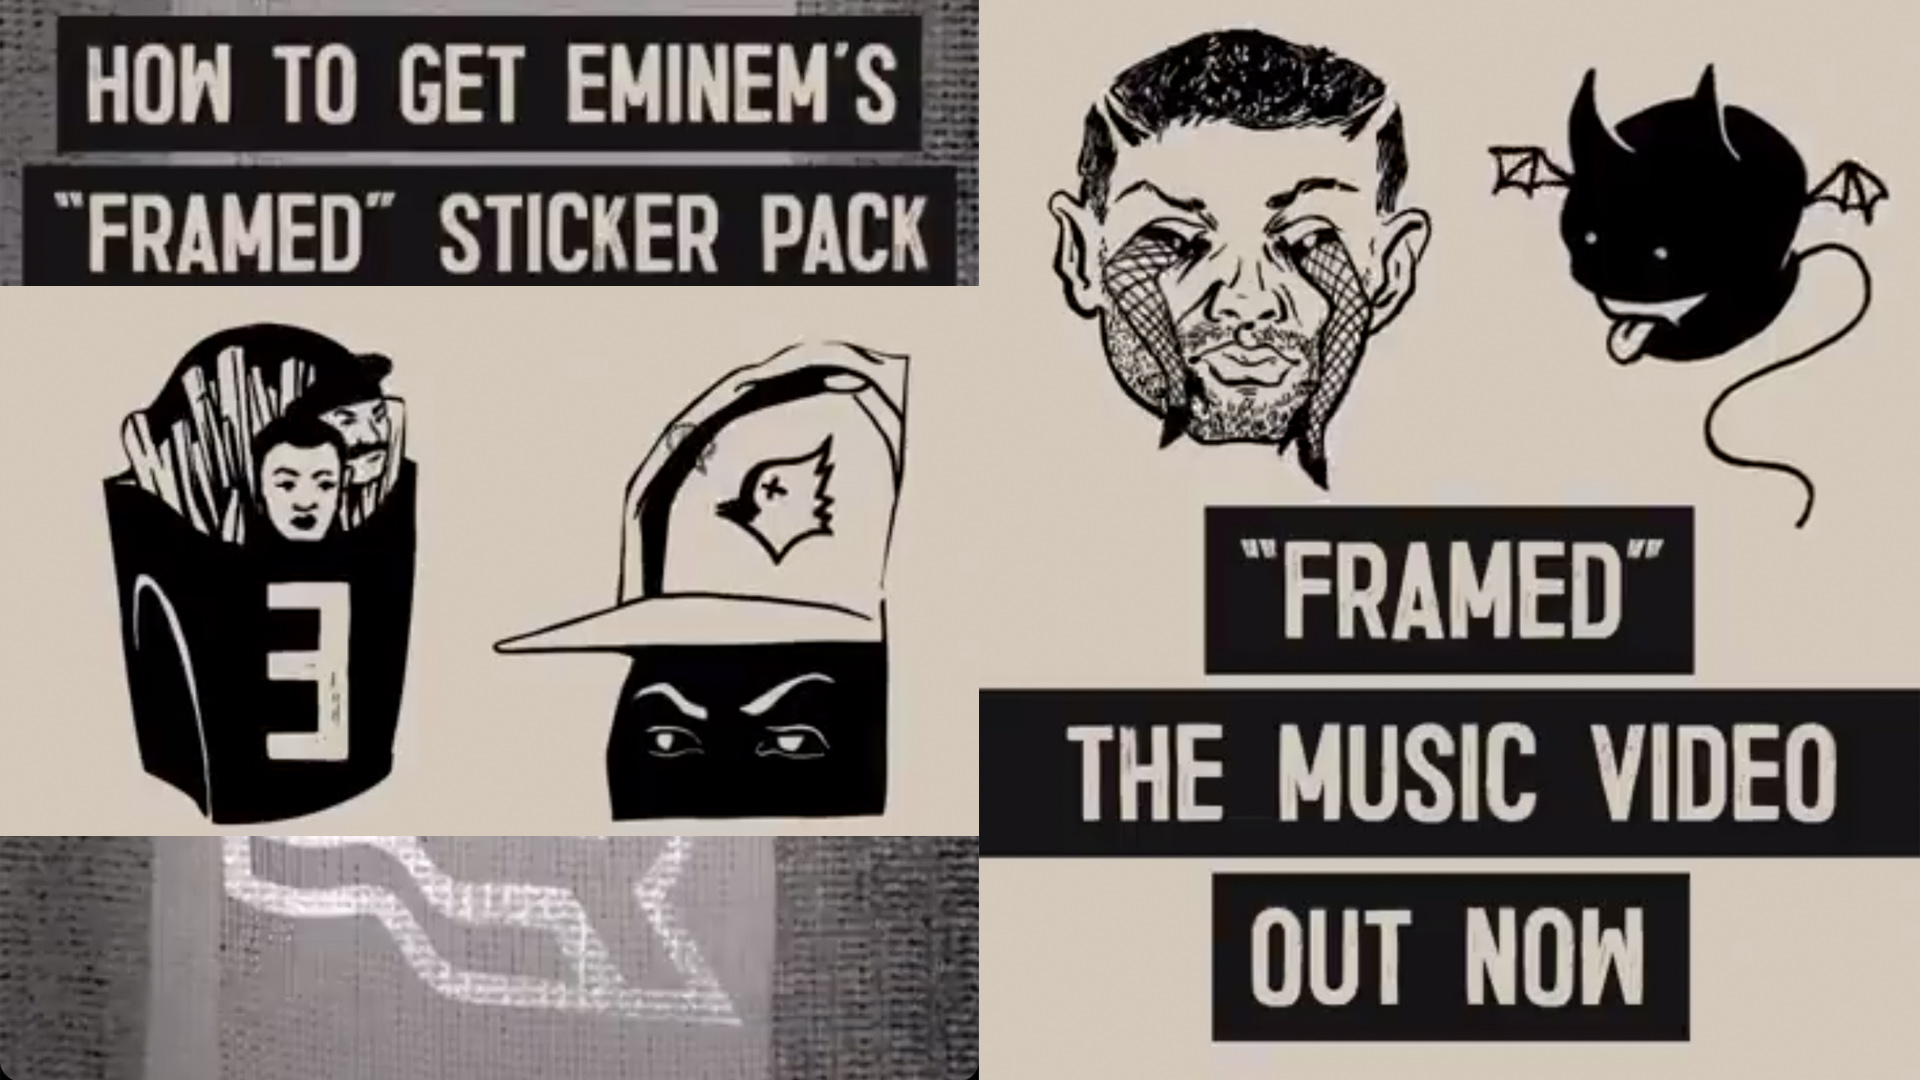 Eminem x Instagram: Специальный стикер-пак к релизу клипа «Framed»